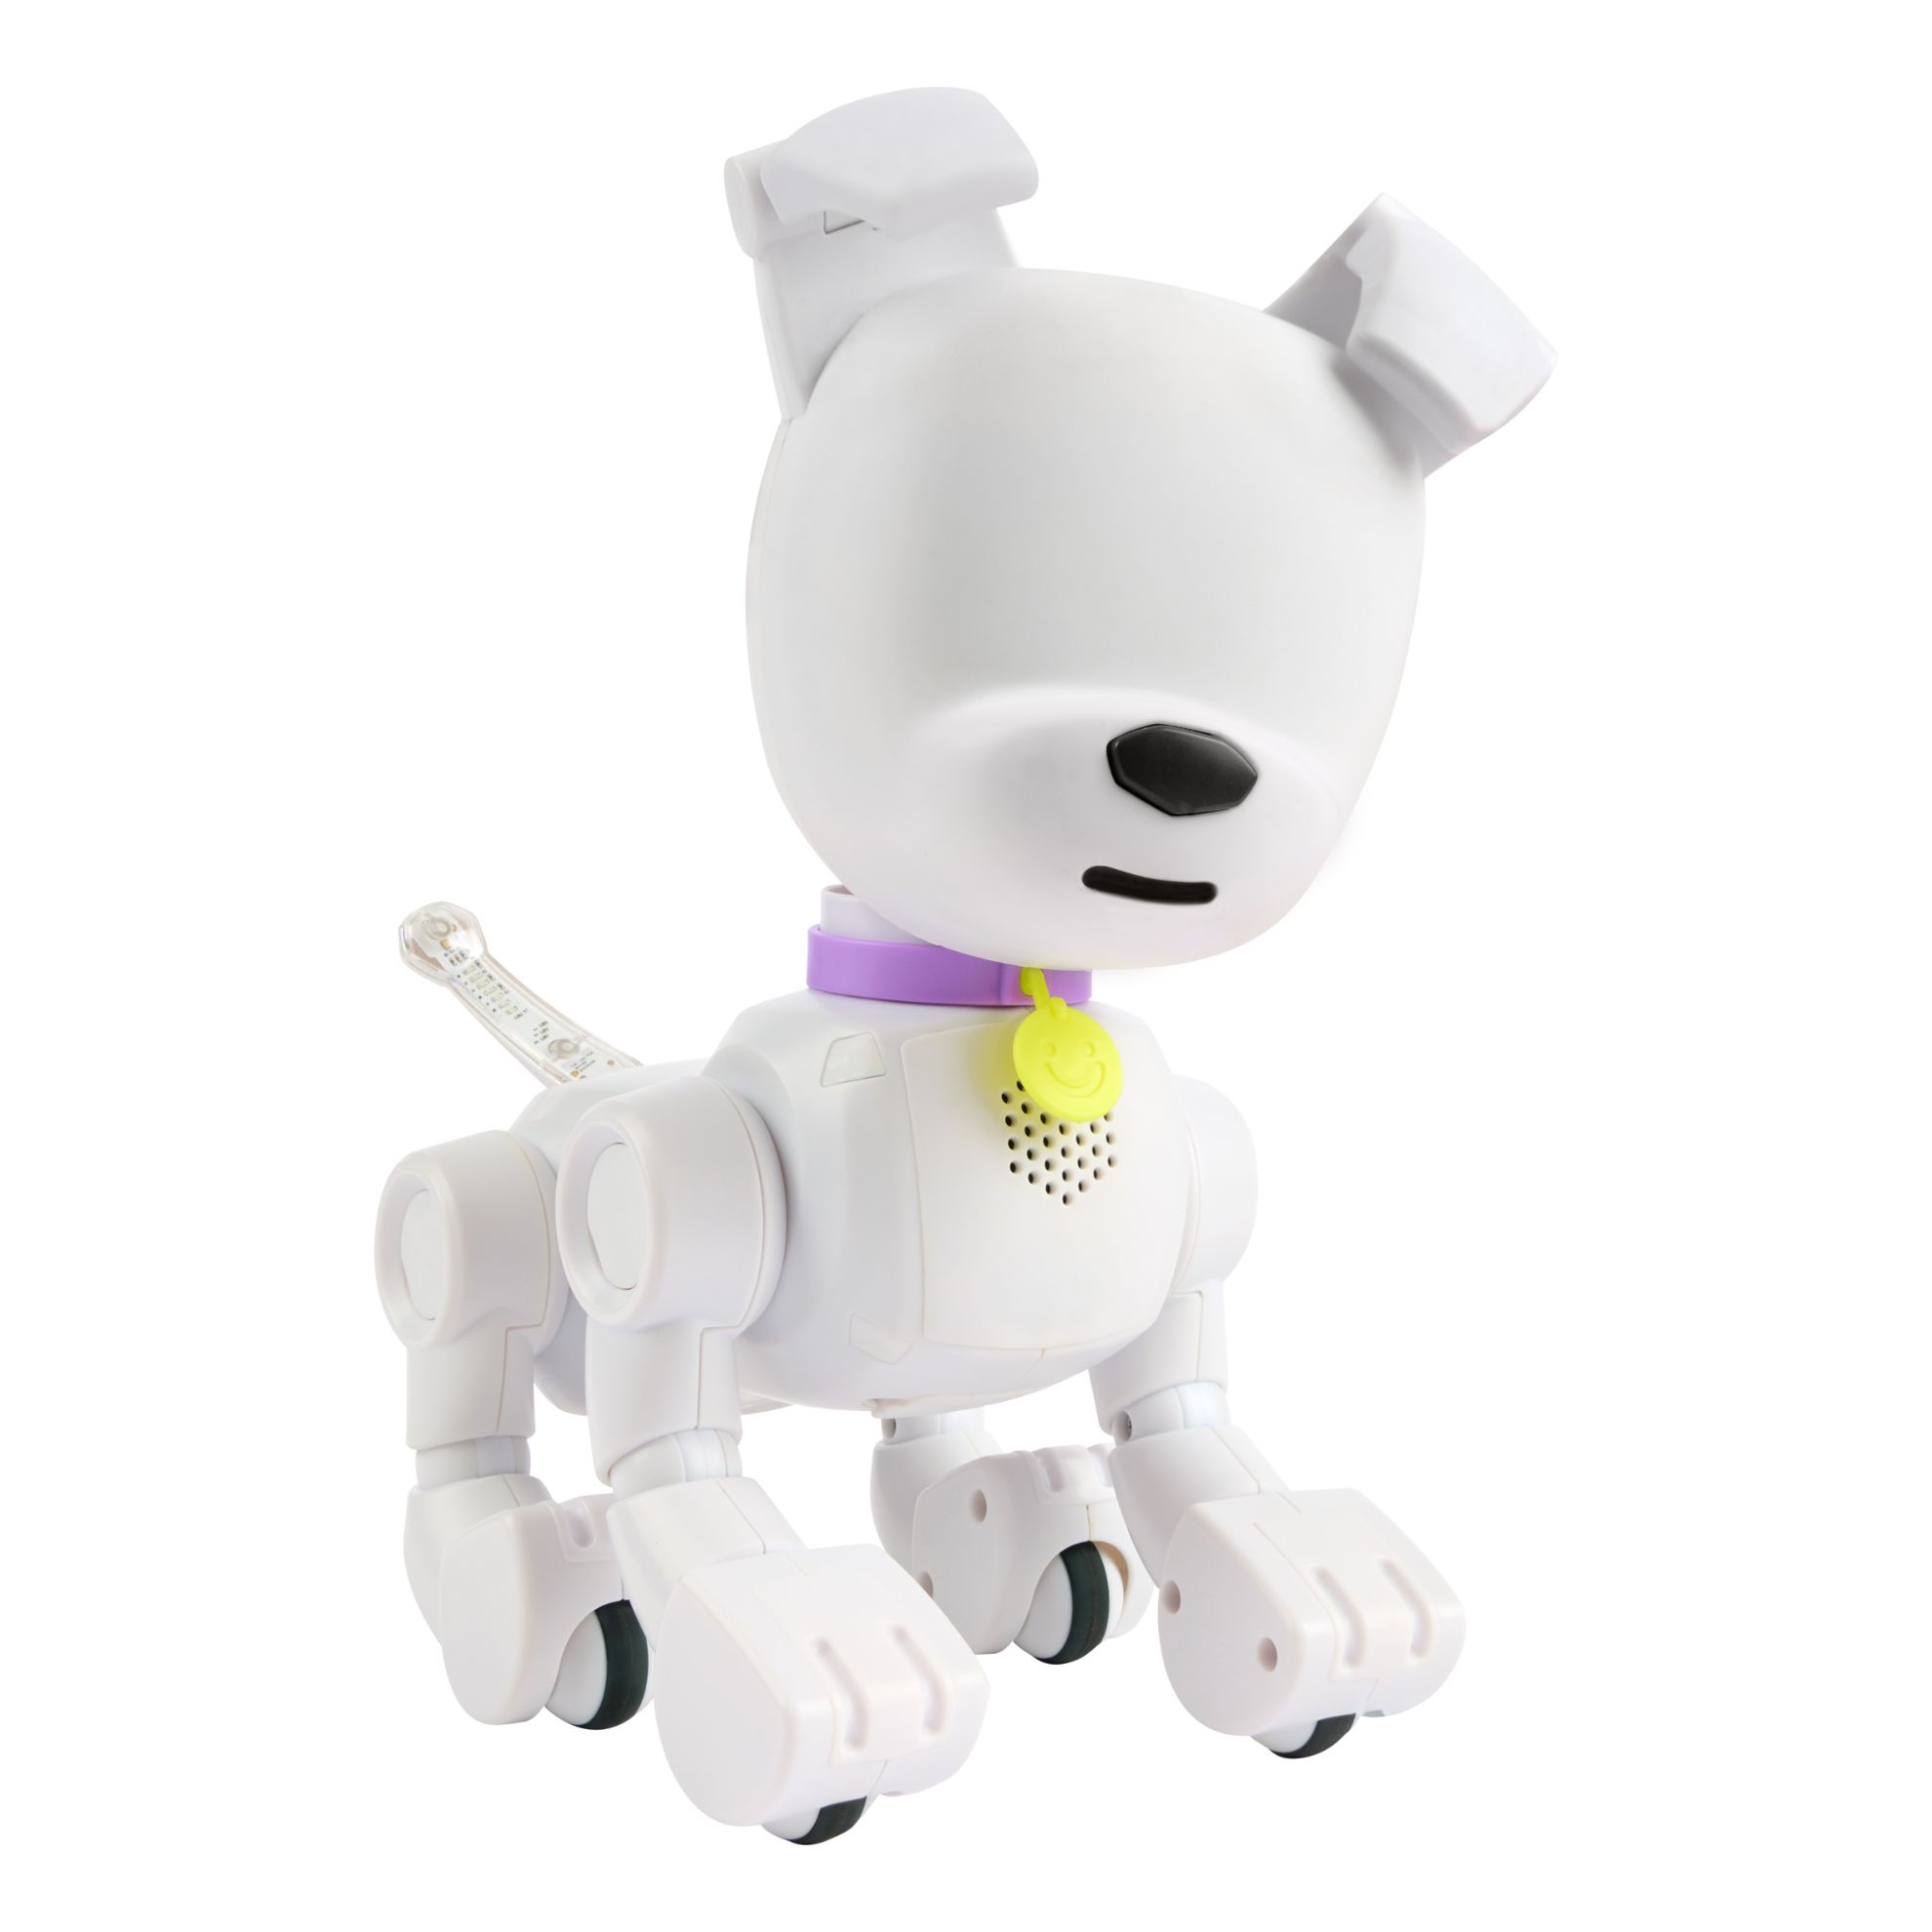 Dog-E Interactive Robot Dog